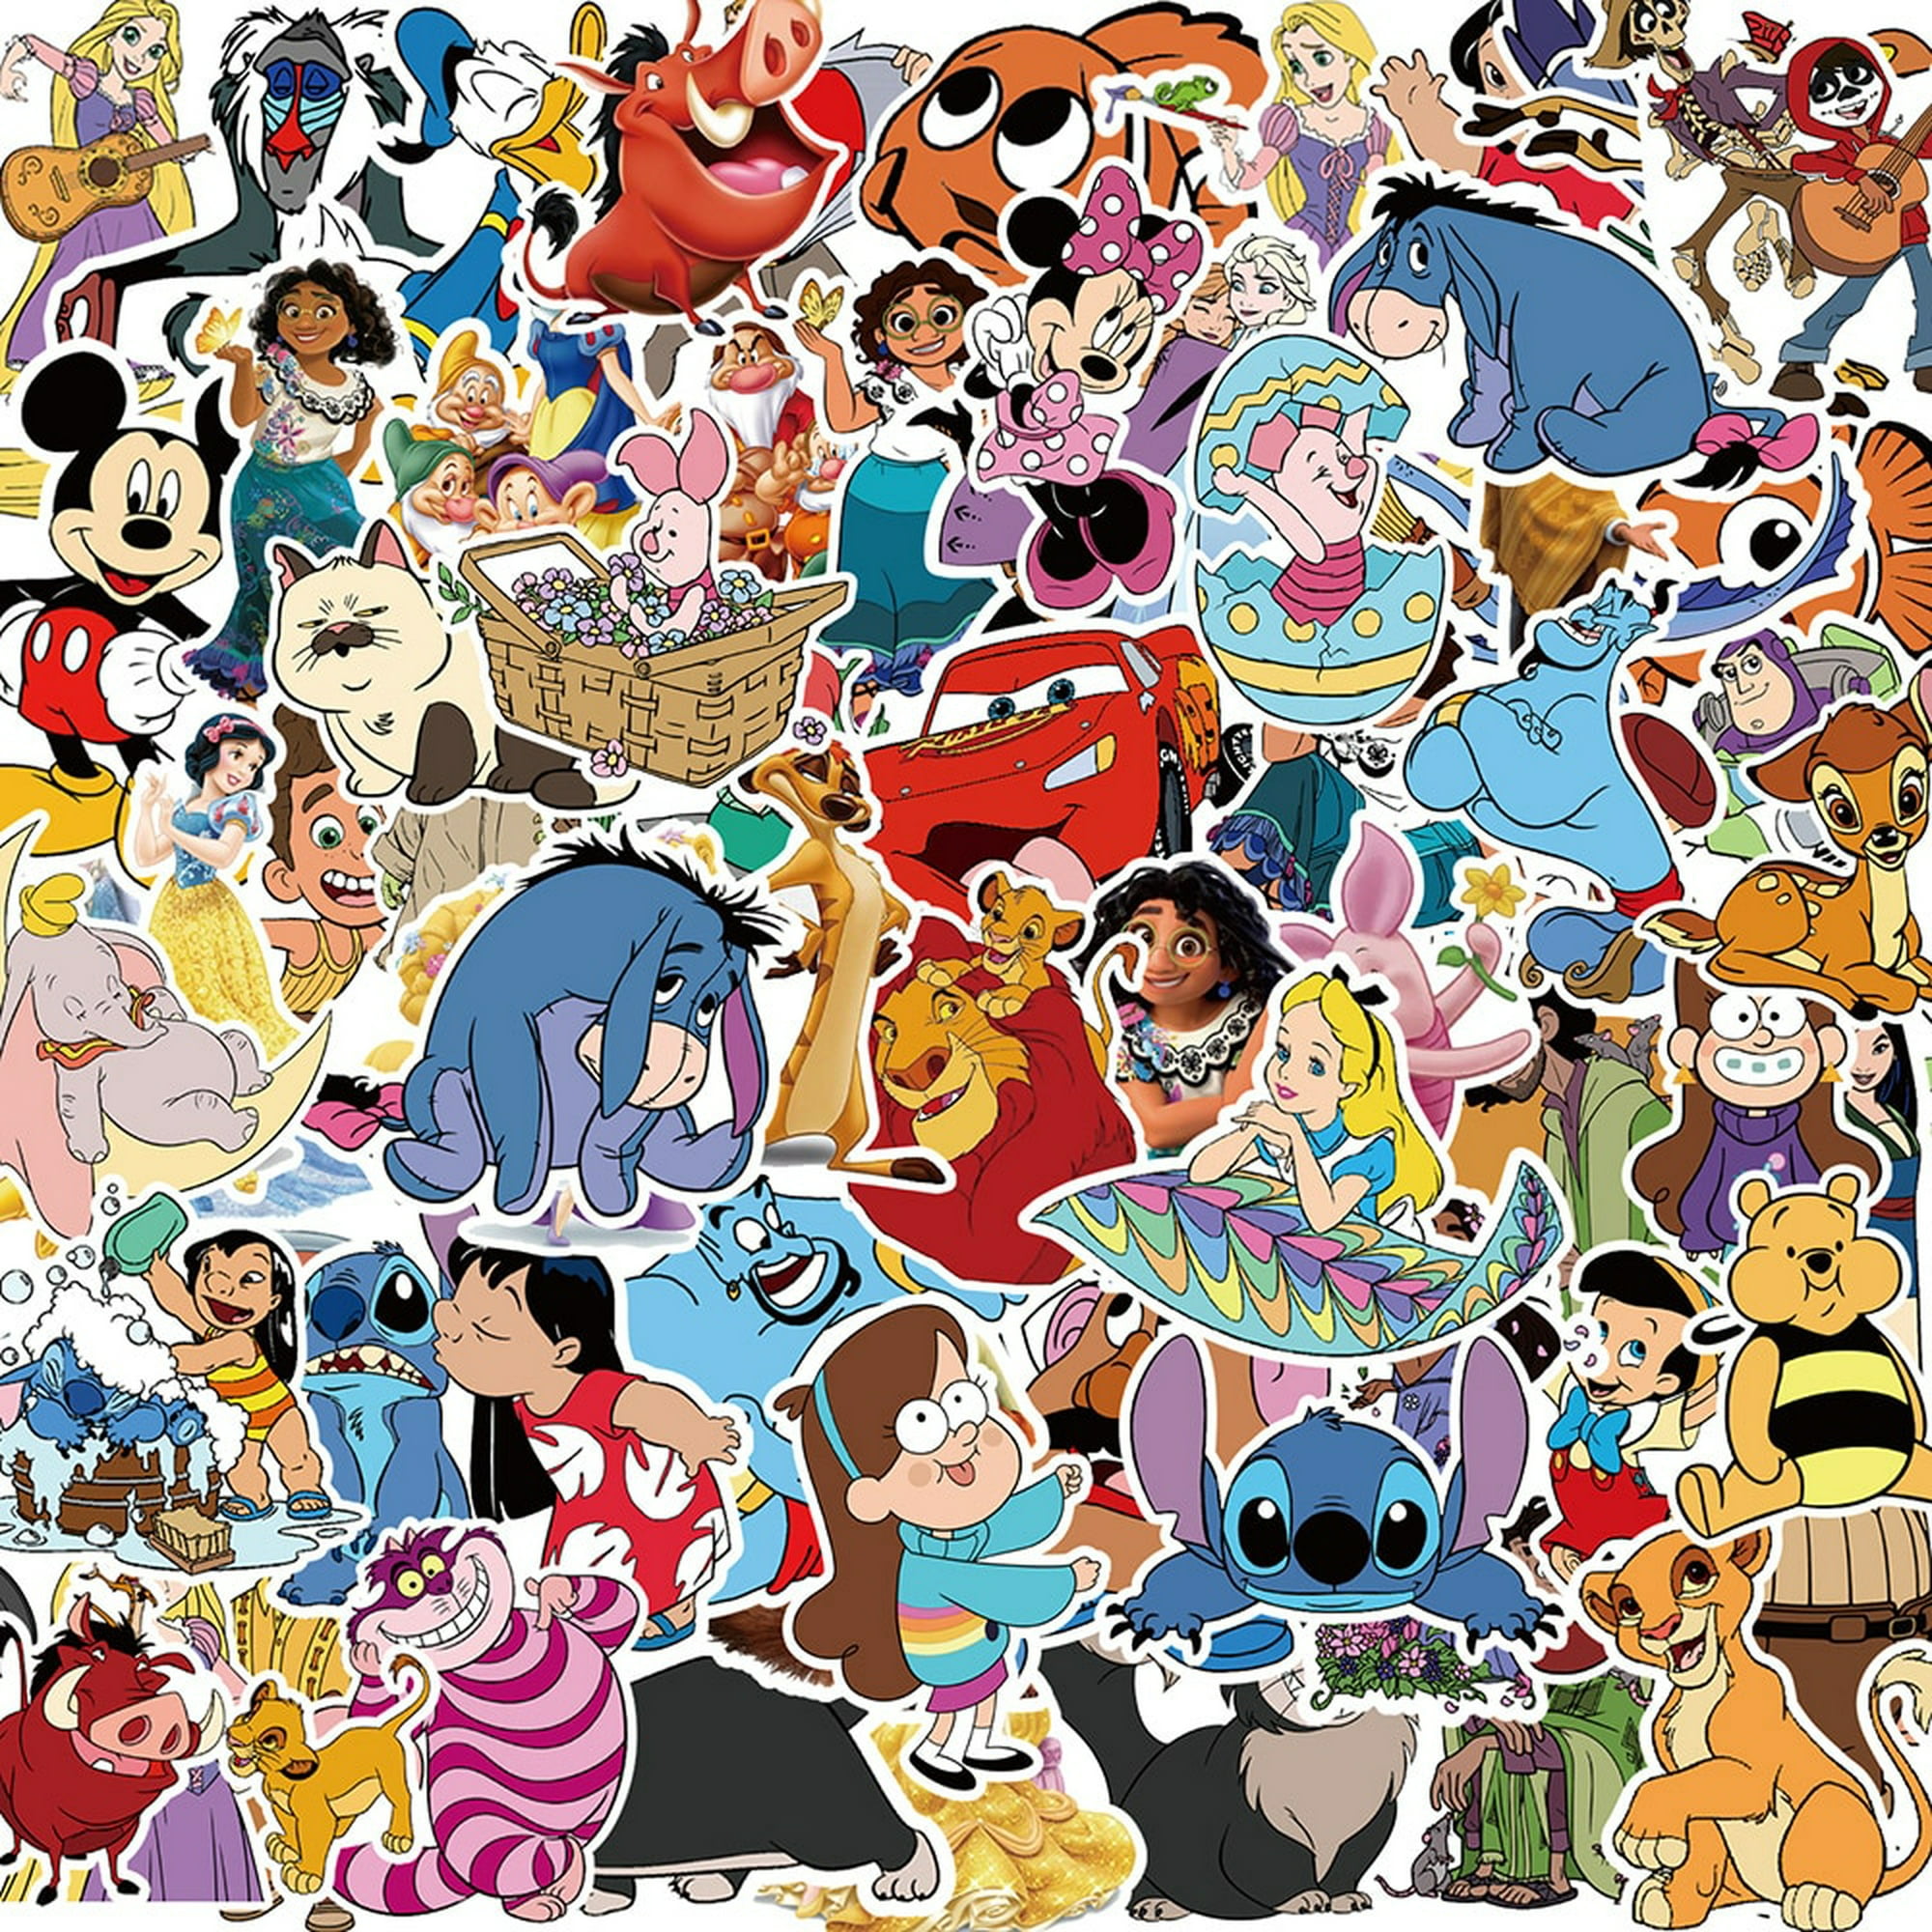 Mickey Stickers / Estampas de Mickey Mouse